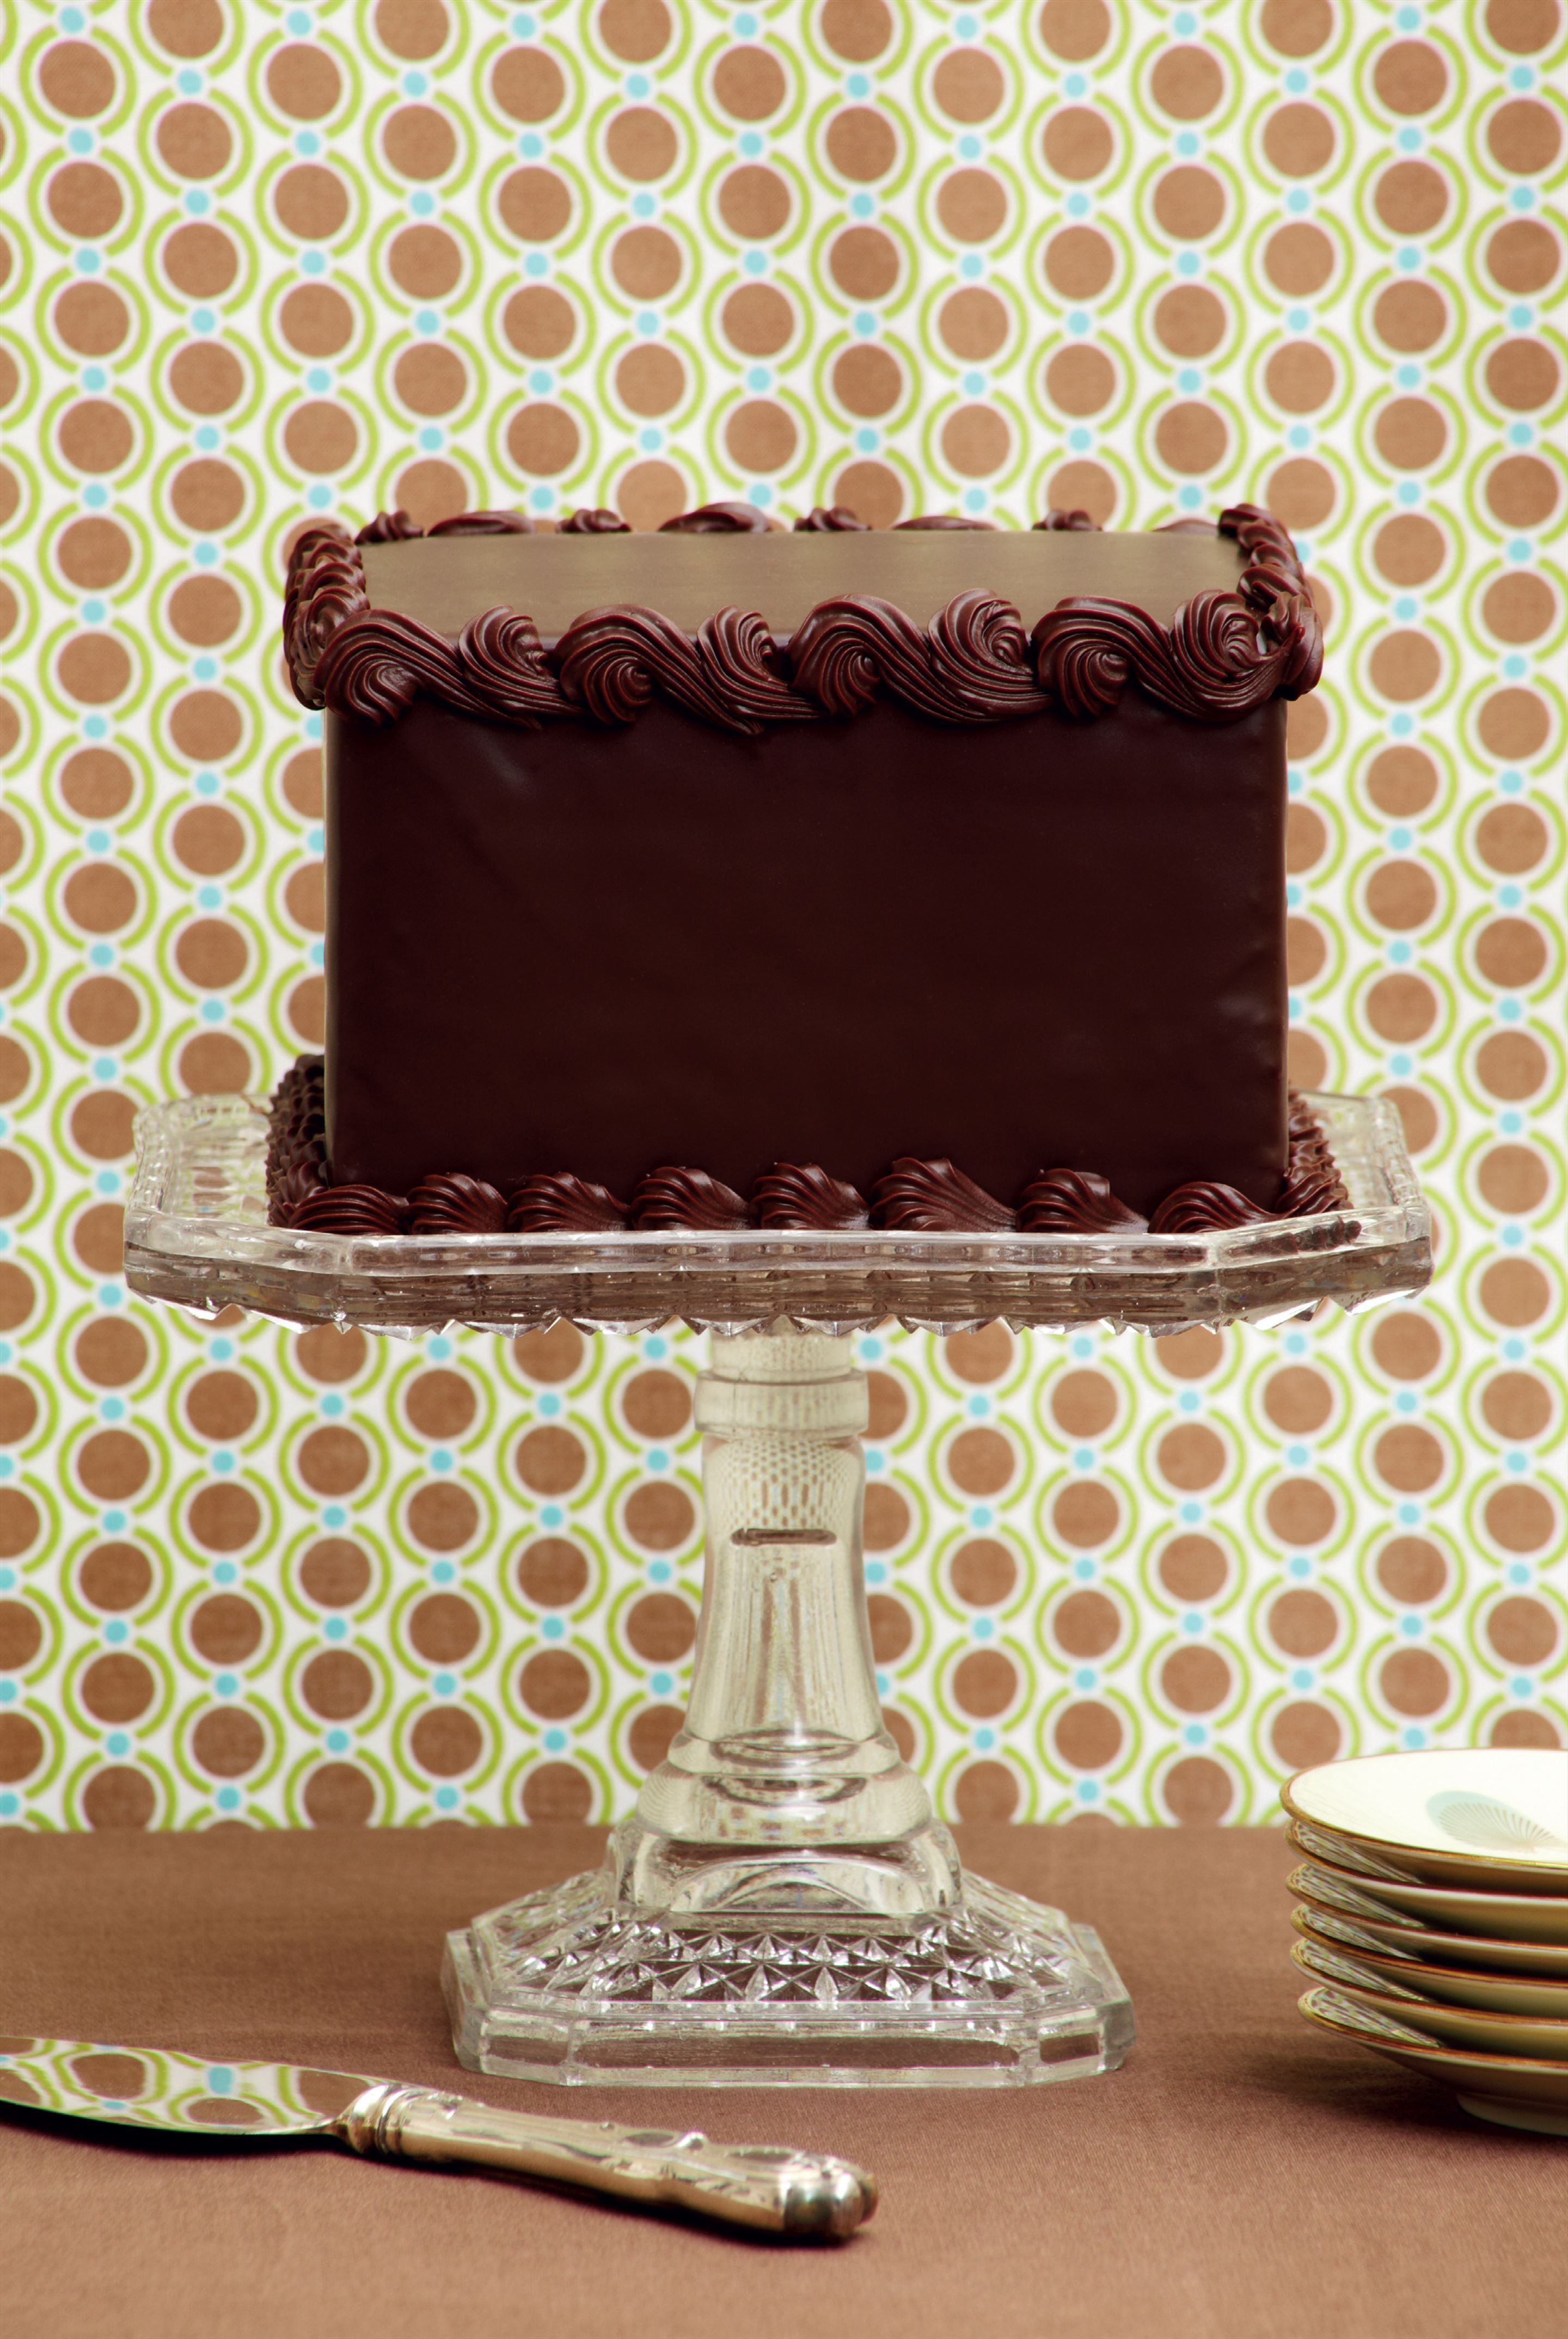 Dark chocolate truffle cake